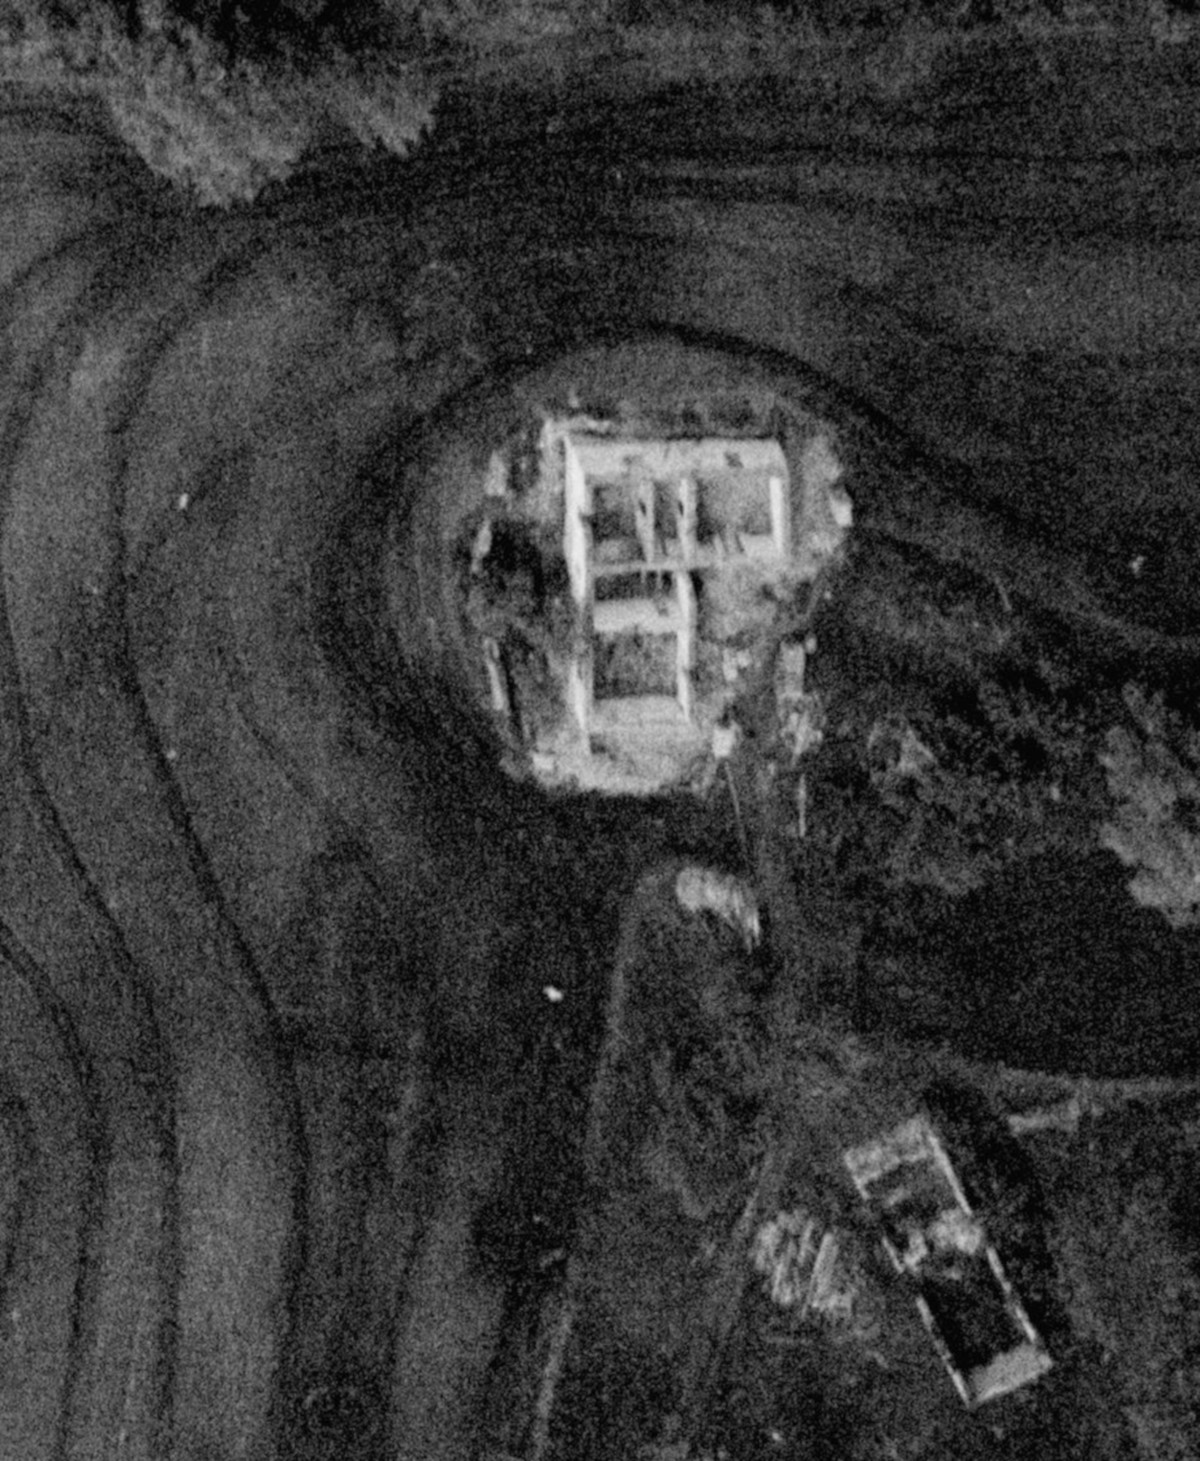 Épülő házak az erdőben Szava és Garé között 1979-ben, már teljesen lebontva